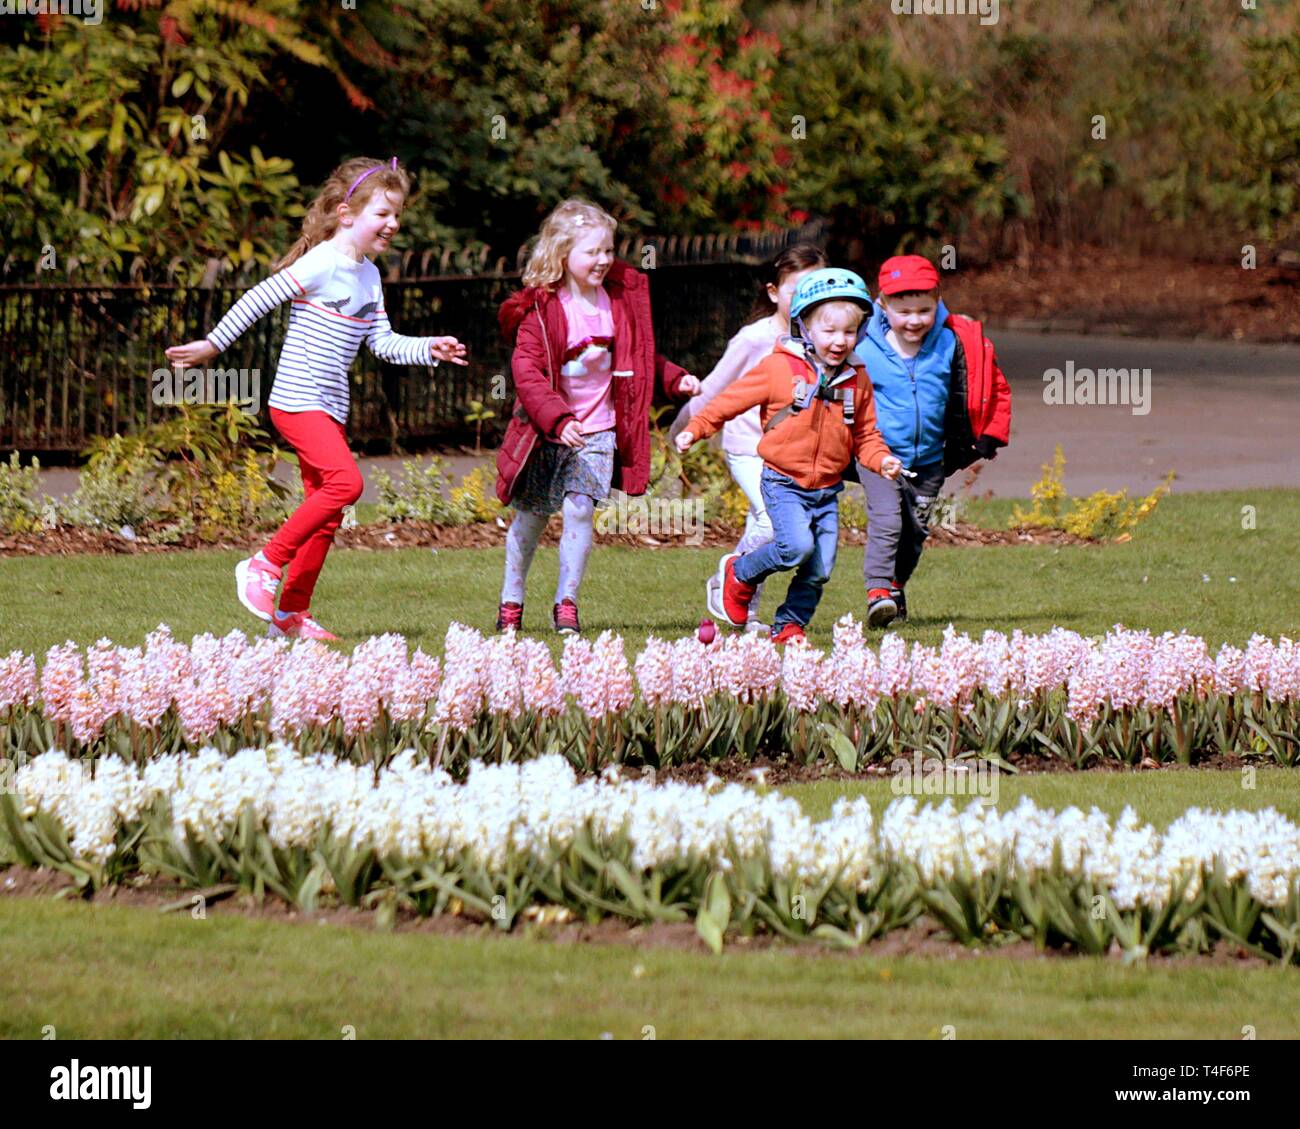 Glasgow, Schottland, Großbritannien. 11 Apr, 2019. UK Wetter: Sonnig Sommertag im Victoria Park als Grünfläche Blume der Stadt zeigt, wie Kinder spielen Stockfoto